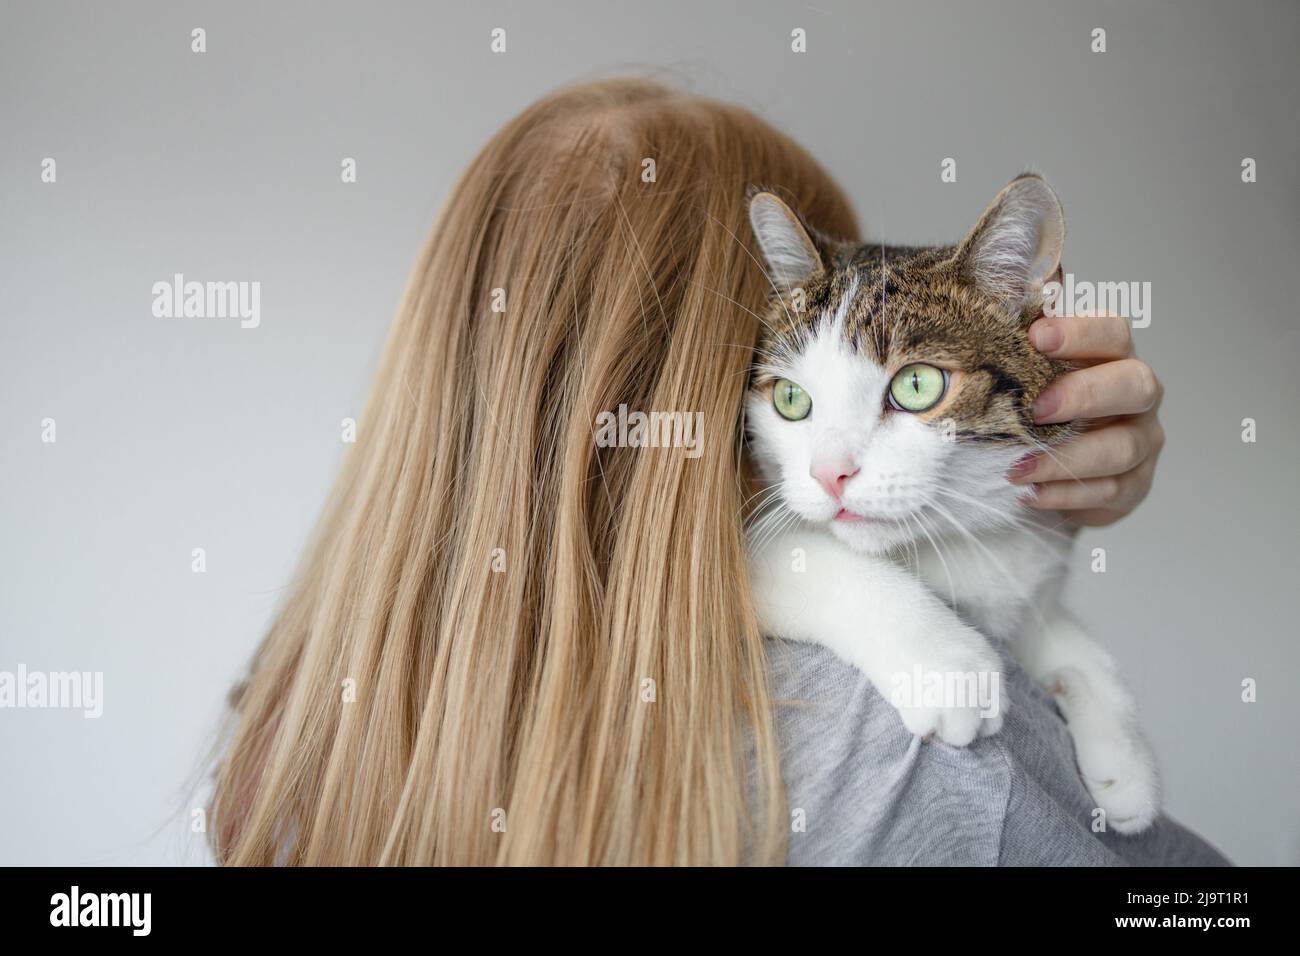 Portrait d'une jeune blonde 30s femme tenant un joli chat tabby avec des yeux verts. Femelle qui embrasse le chat dans les mains Banque D'Images